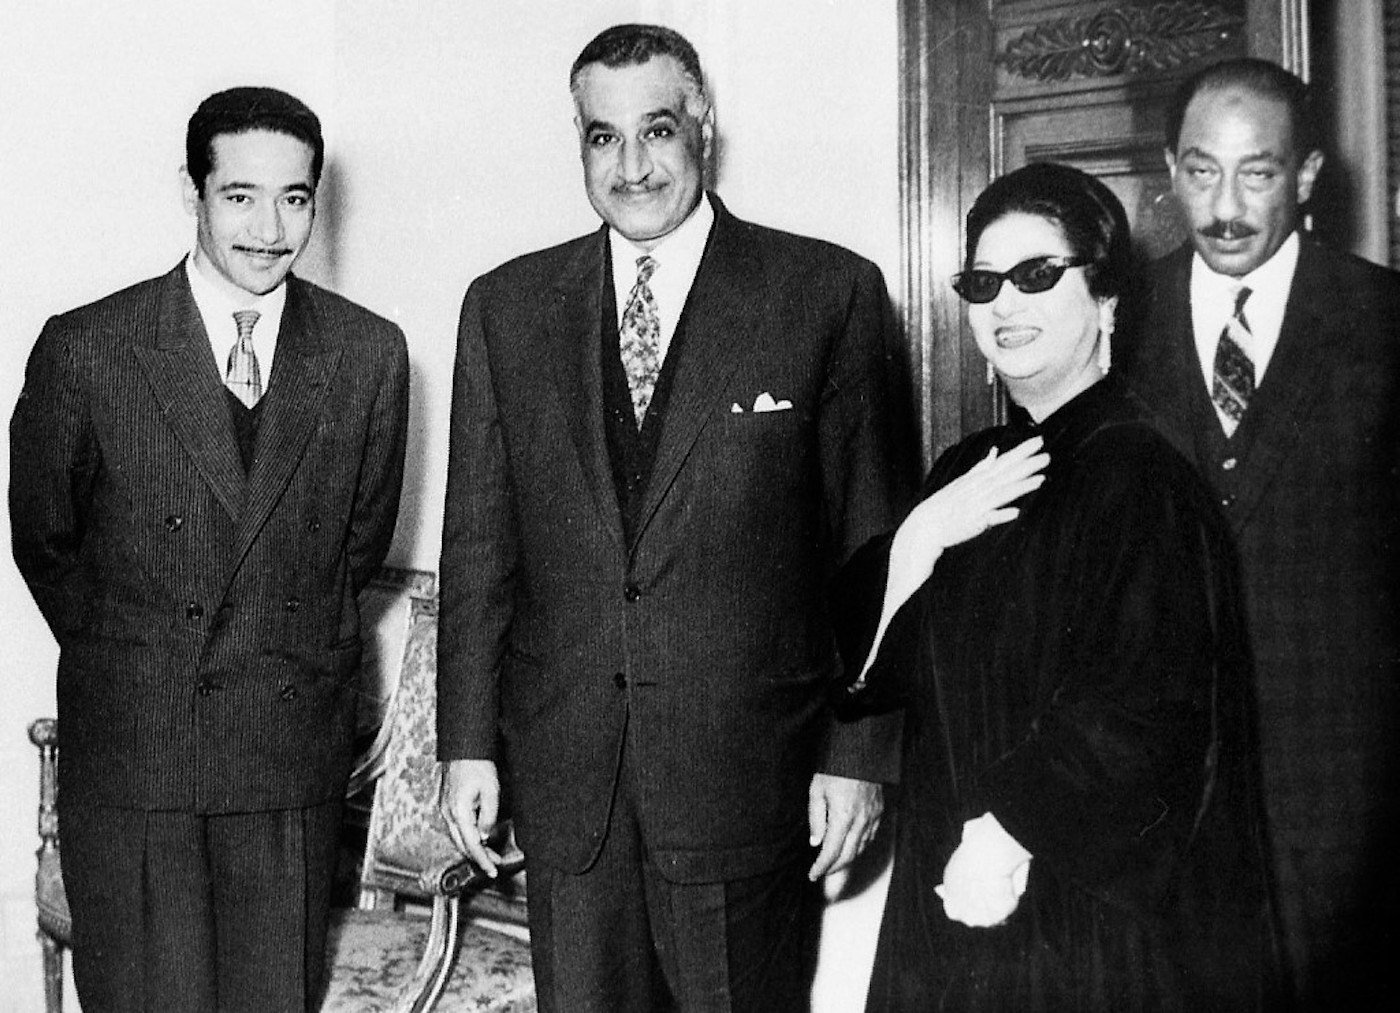 Quand il rencontre la diva égyptienne Oum Kalthoum – et, ici sur la photo (complètement à gauche), Mohammed al-Mougui, un des principaux compositeurs de musique arabe du XXe siècle – à la fin des années 1960, Anouar al-Sadate n’est pas président : Gamal Abdel Nasser, au centre, est encore l’homme fort du pays. (AFP)